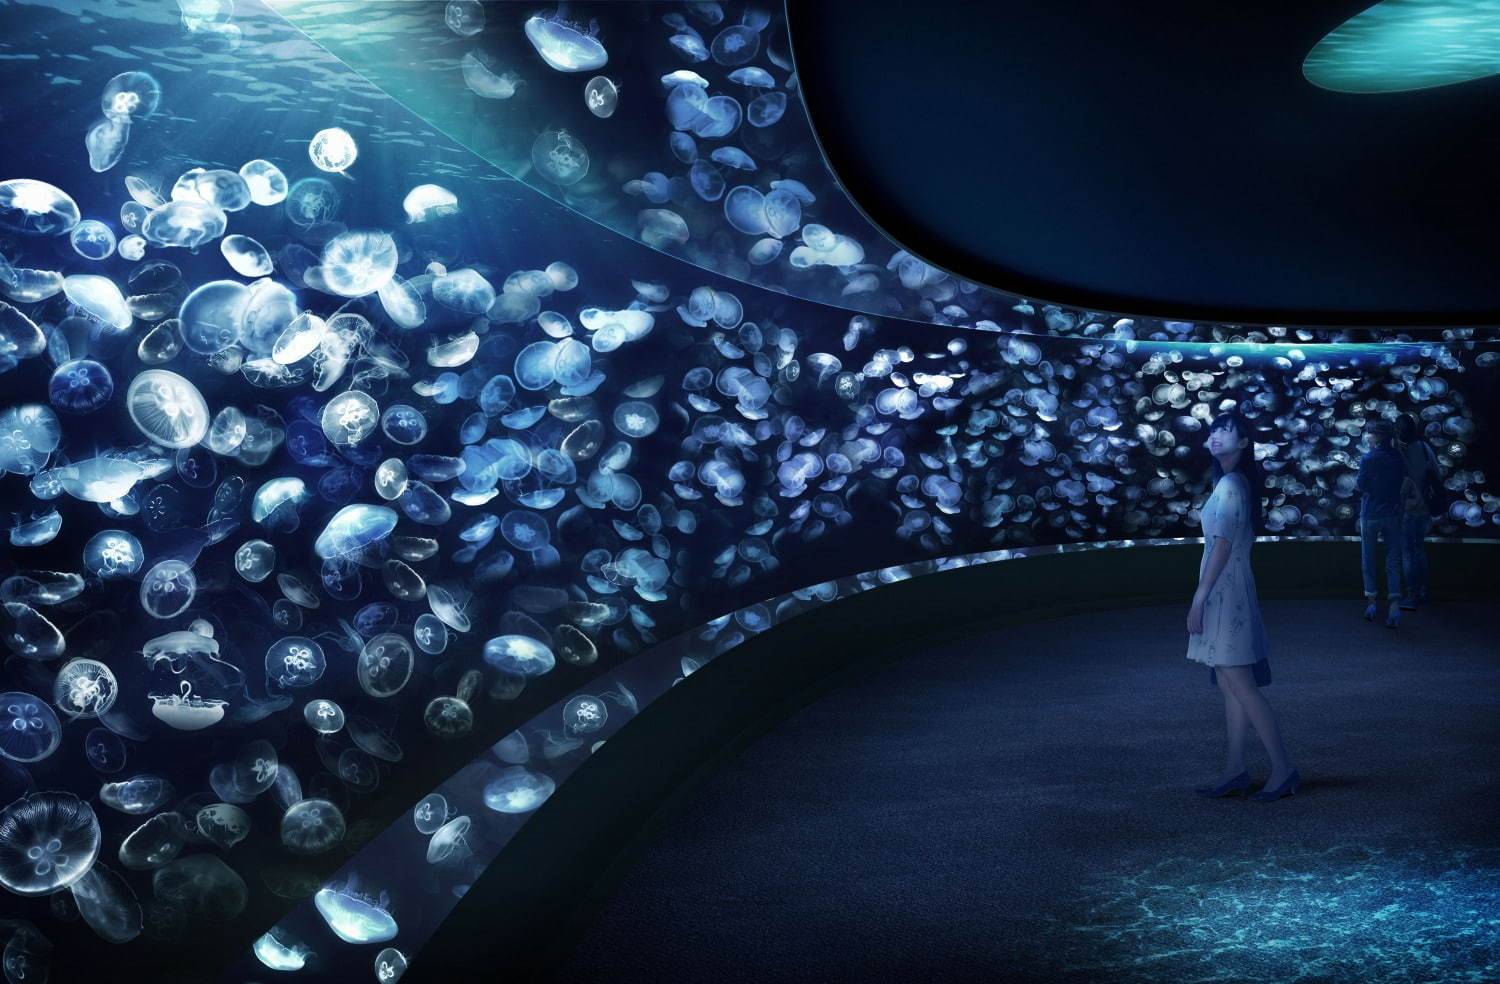 池袋陽光水族館的「海月空感」14米闊的巨型水槽中展示載浮載沉的水母。